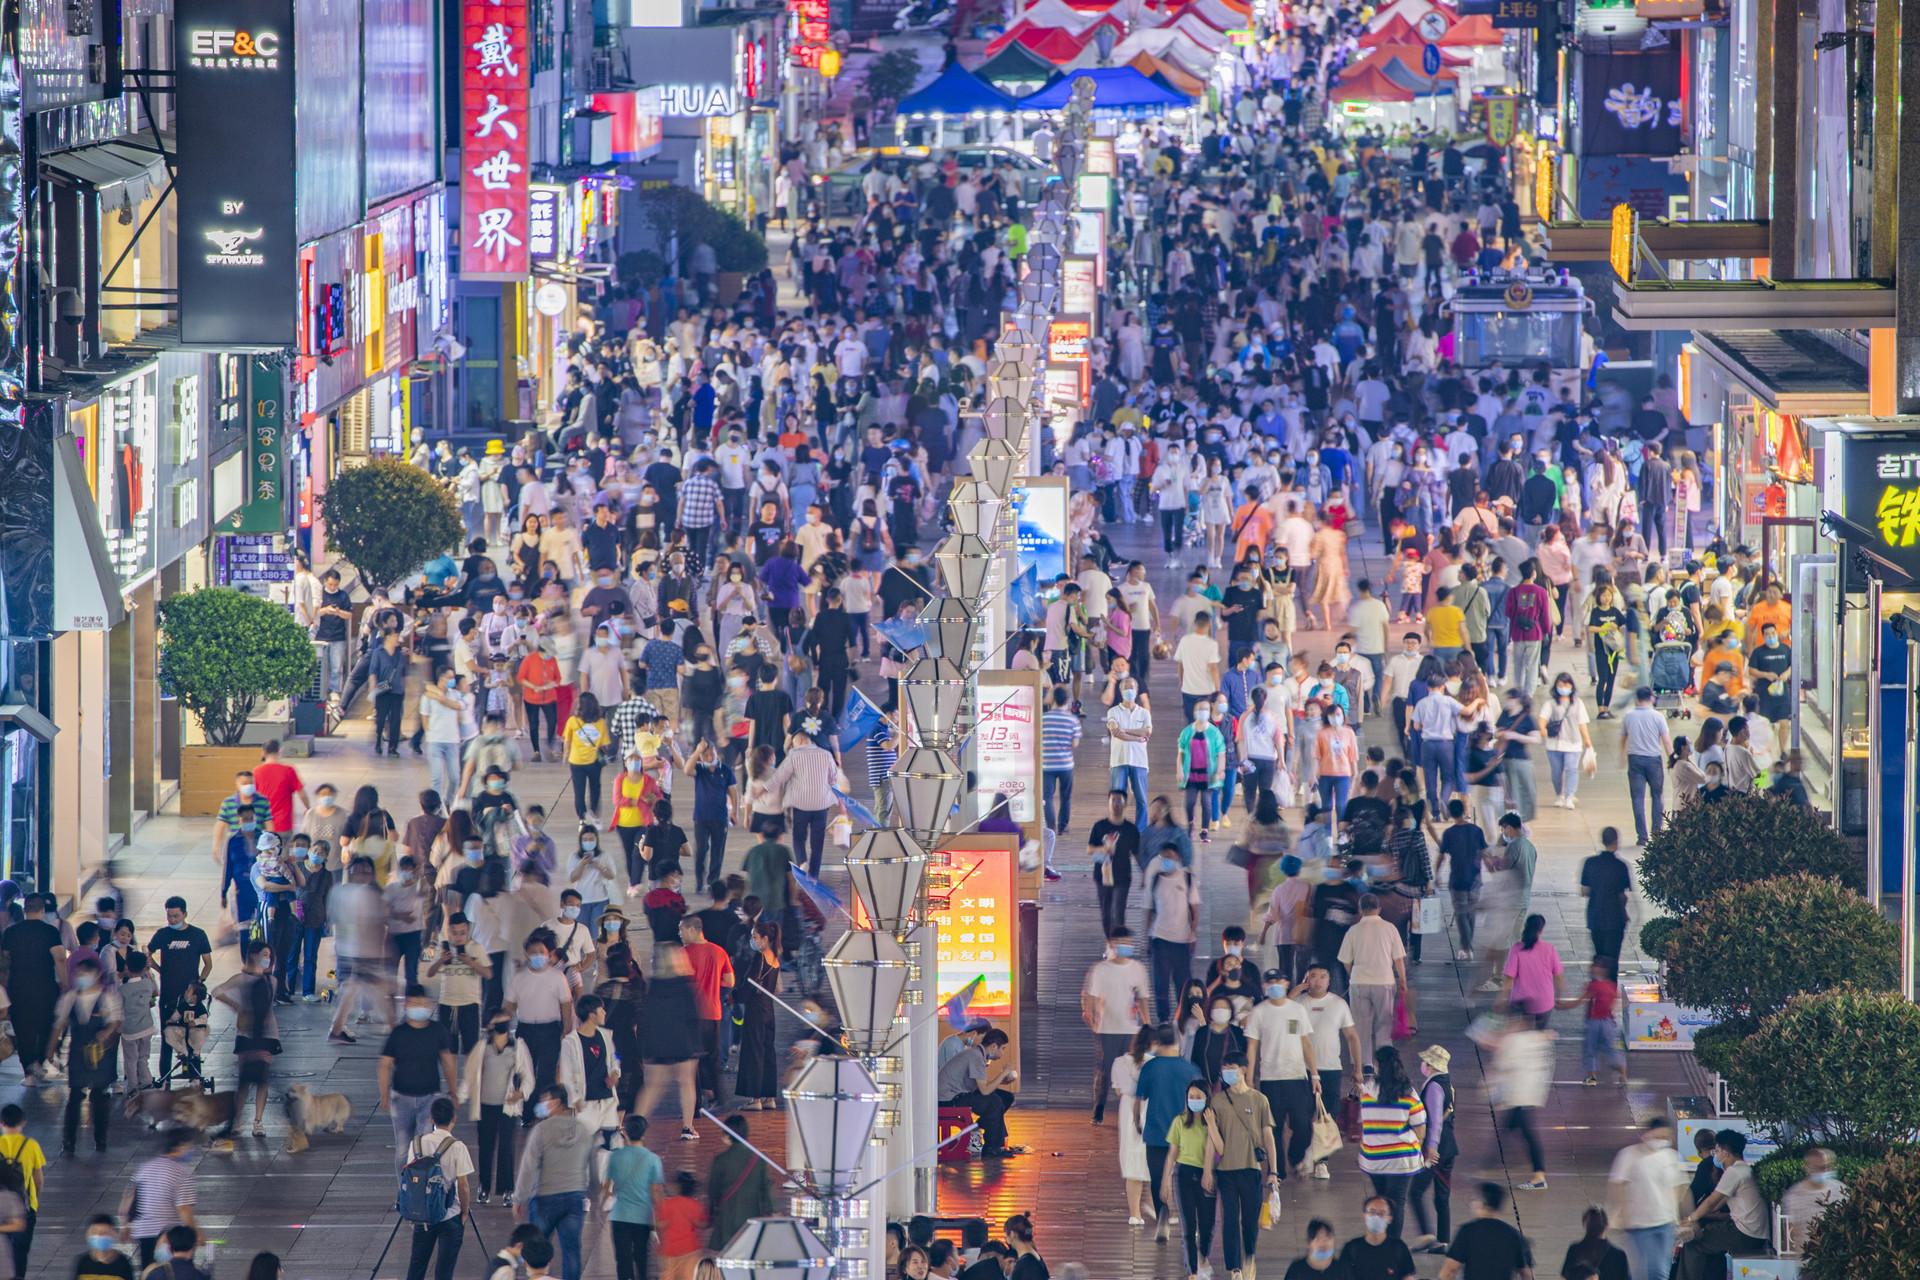 福布斯发布中国消费活力城市榜单 青岛排名第十八位